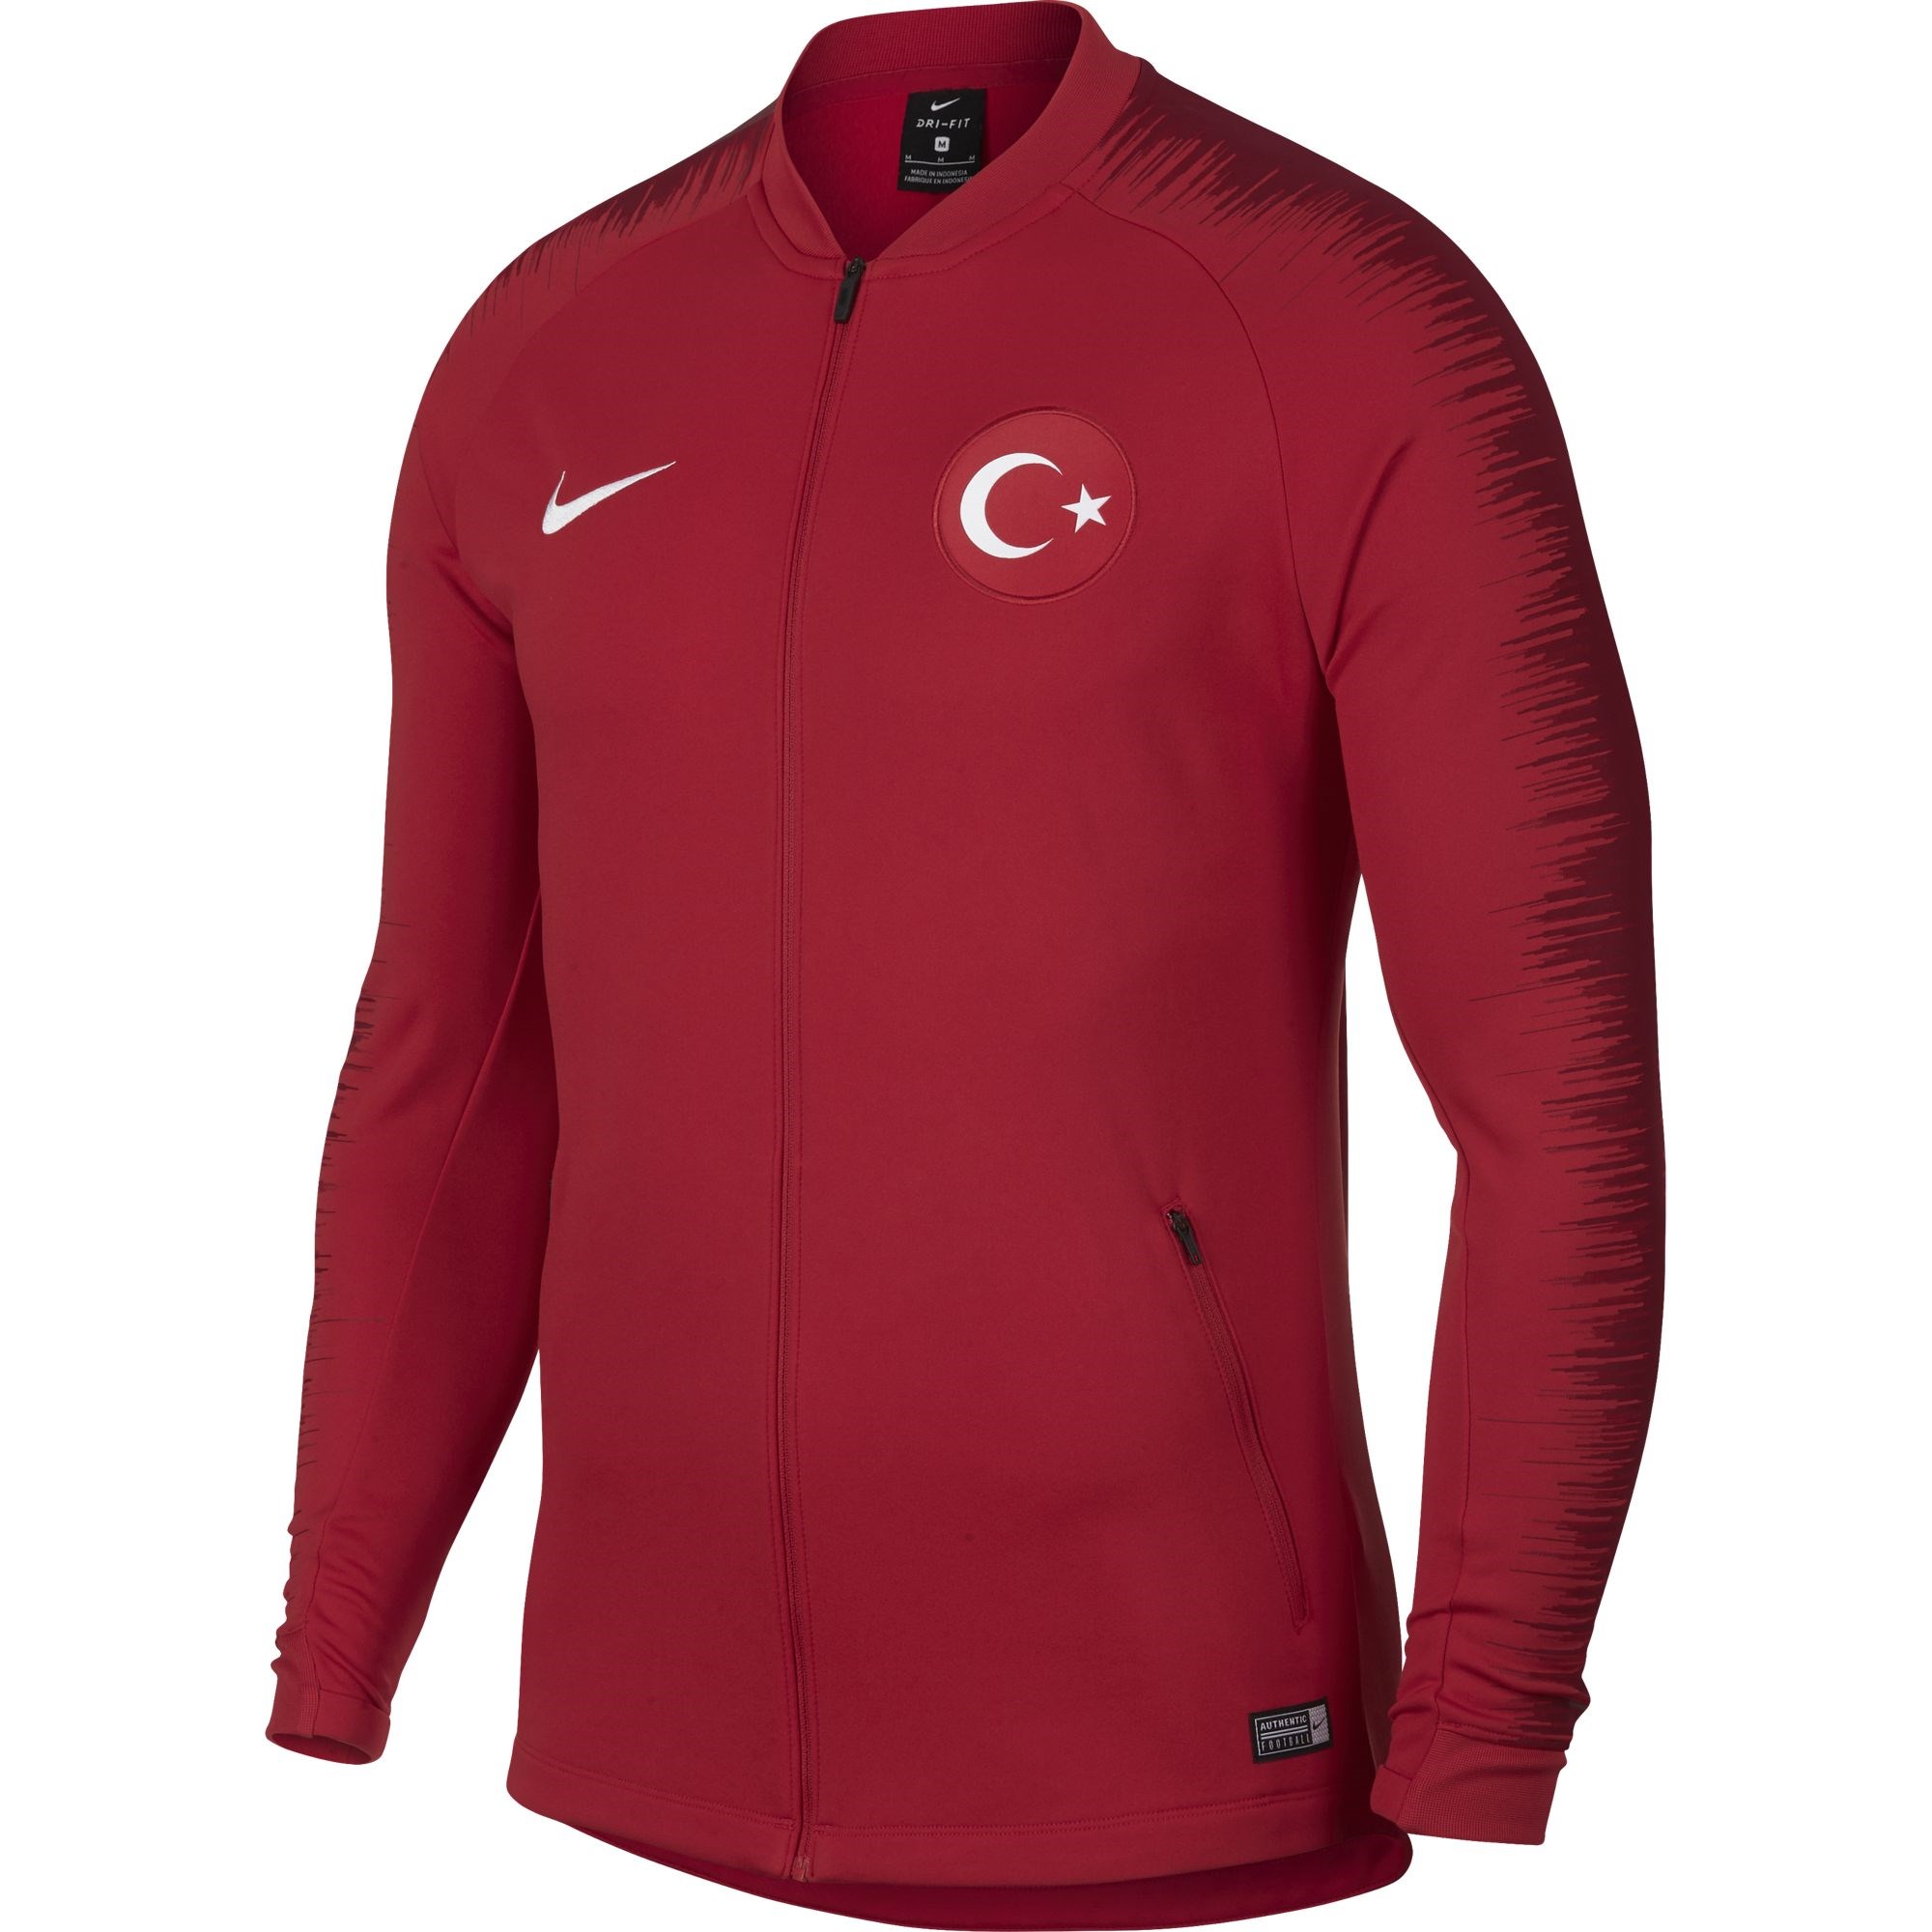 Nike Türk Milli Takımı Anthm Fb Jkt Erkek Futbol Ceketi 893605-657 |  Etichet Sport